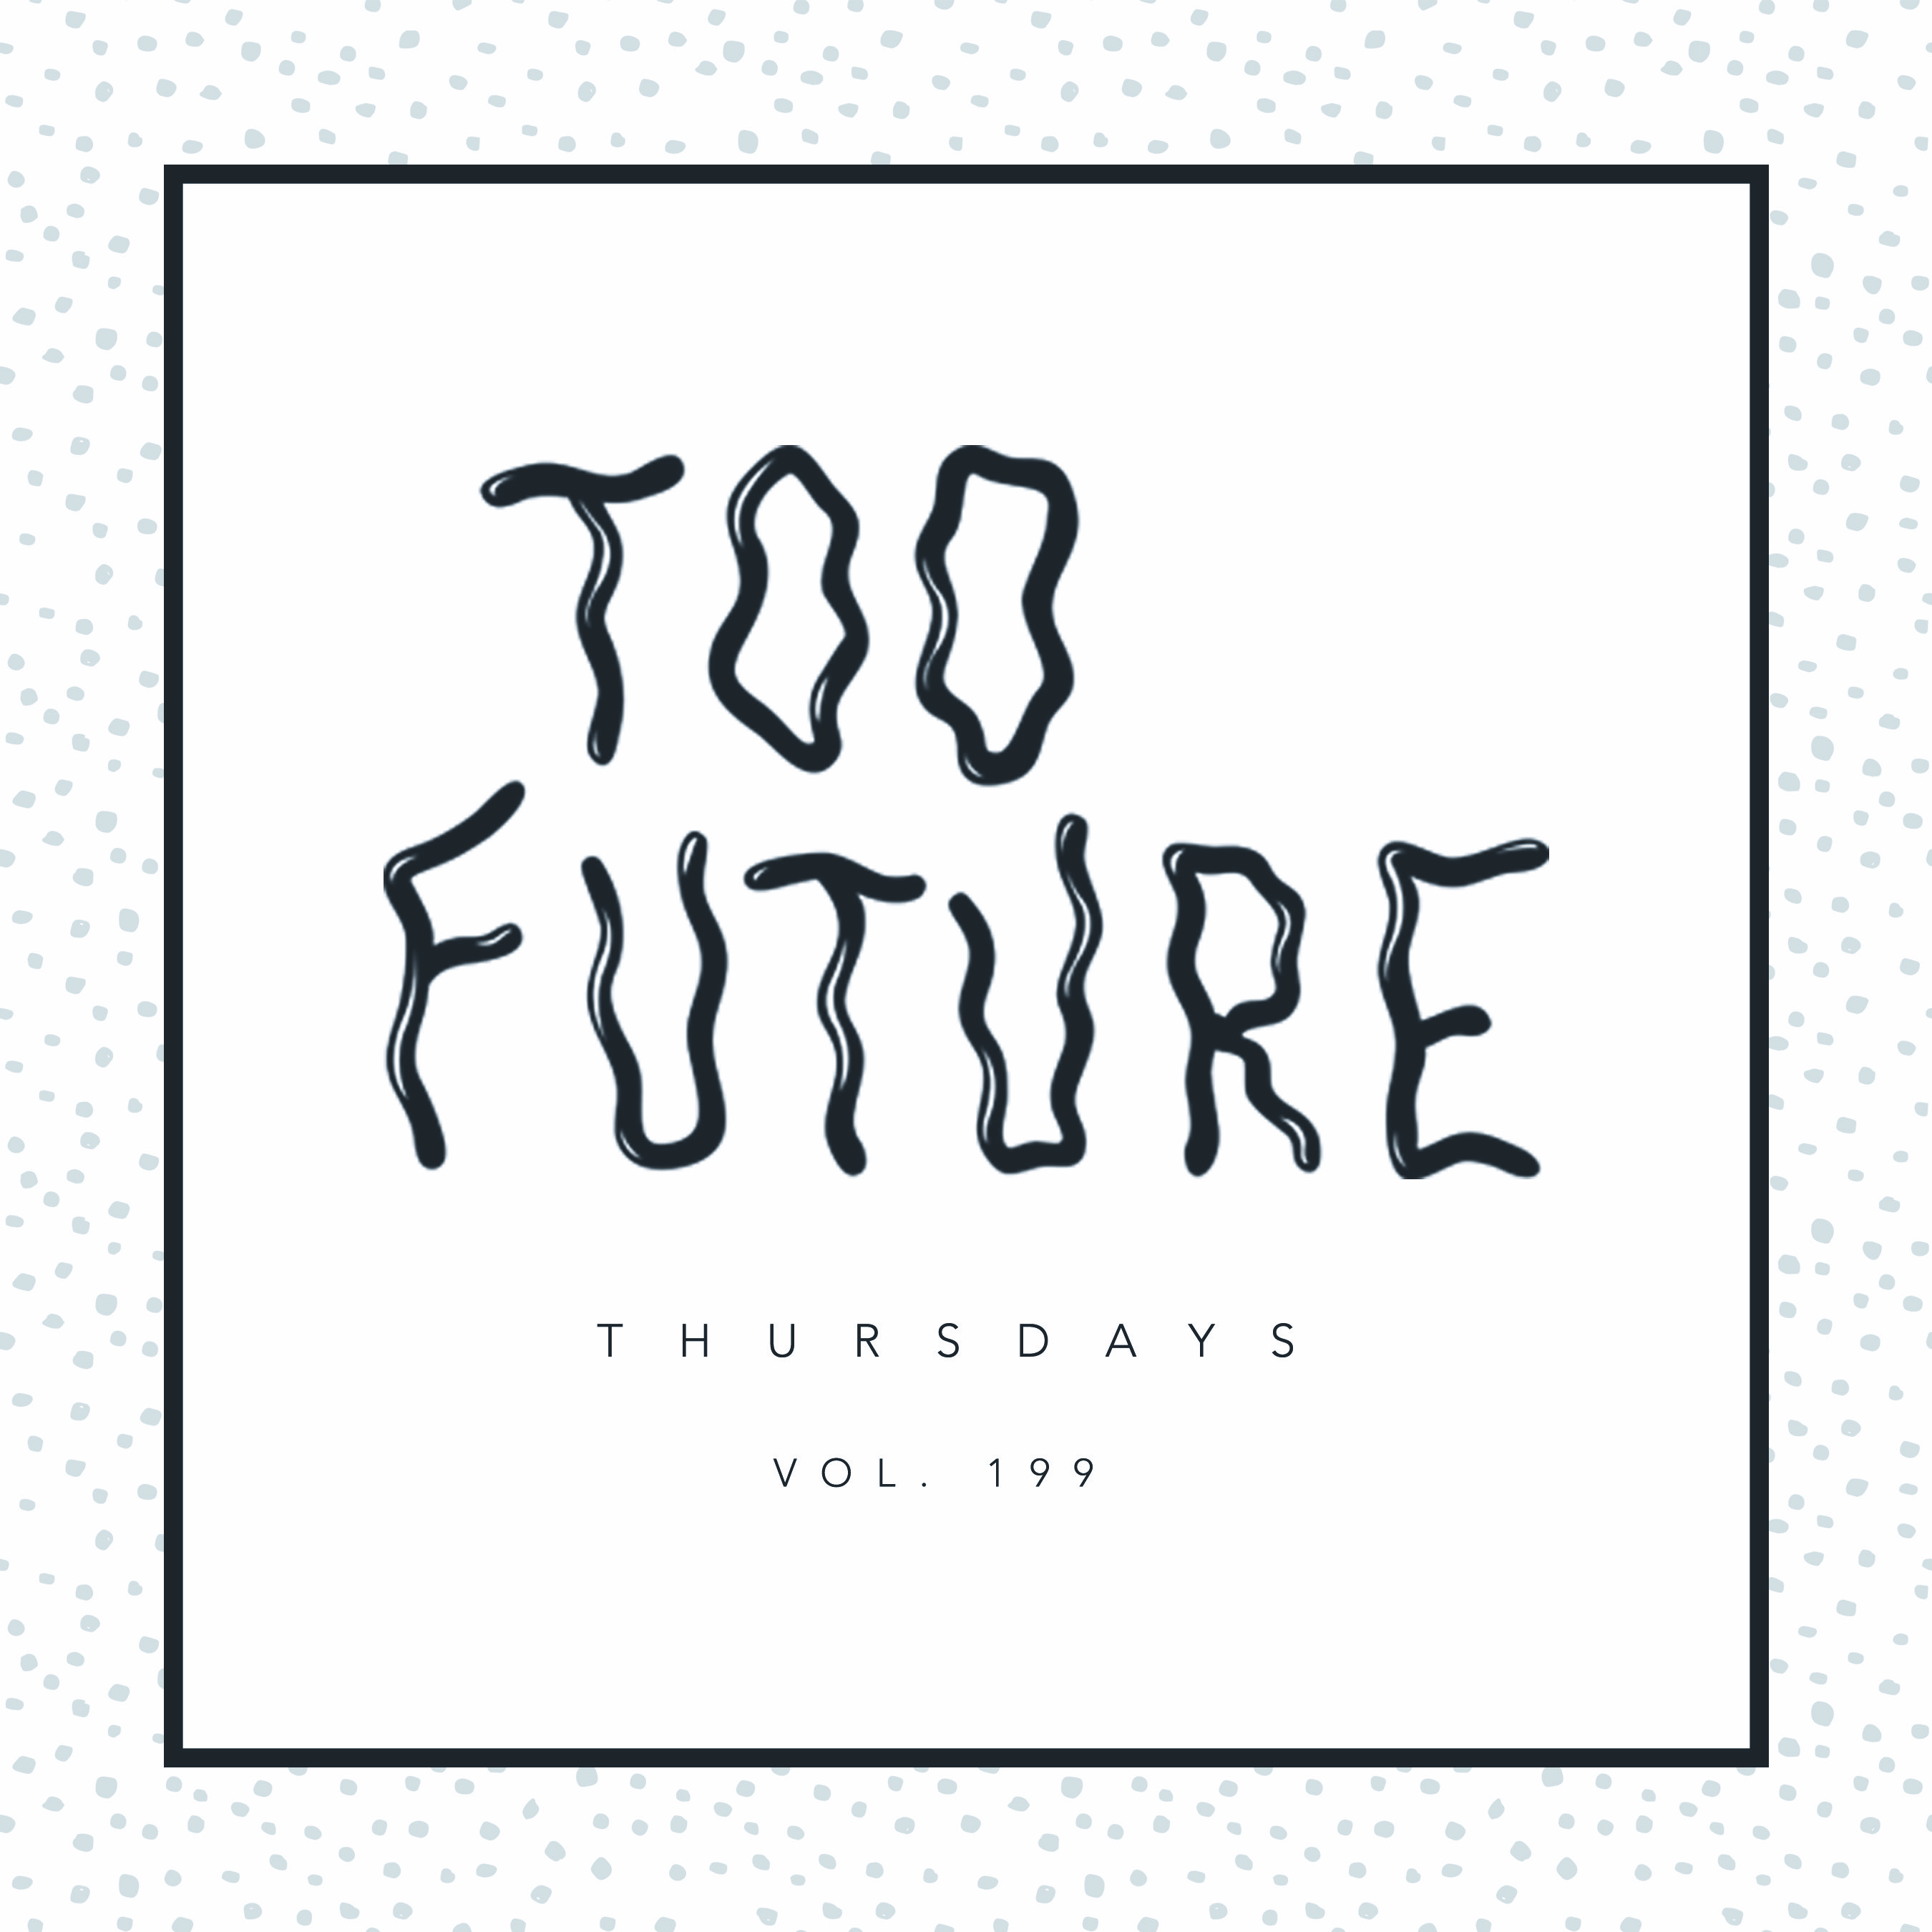 too-future-thursdays-vol-199